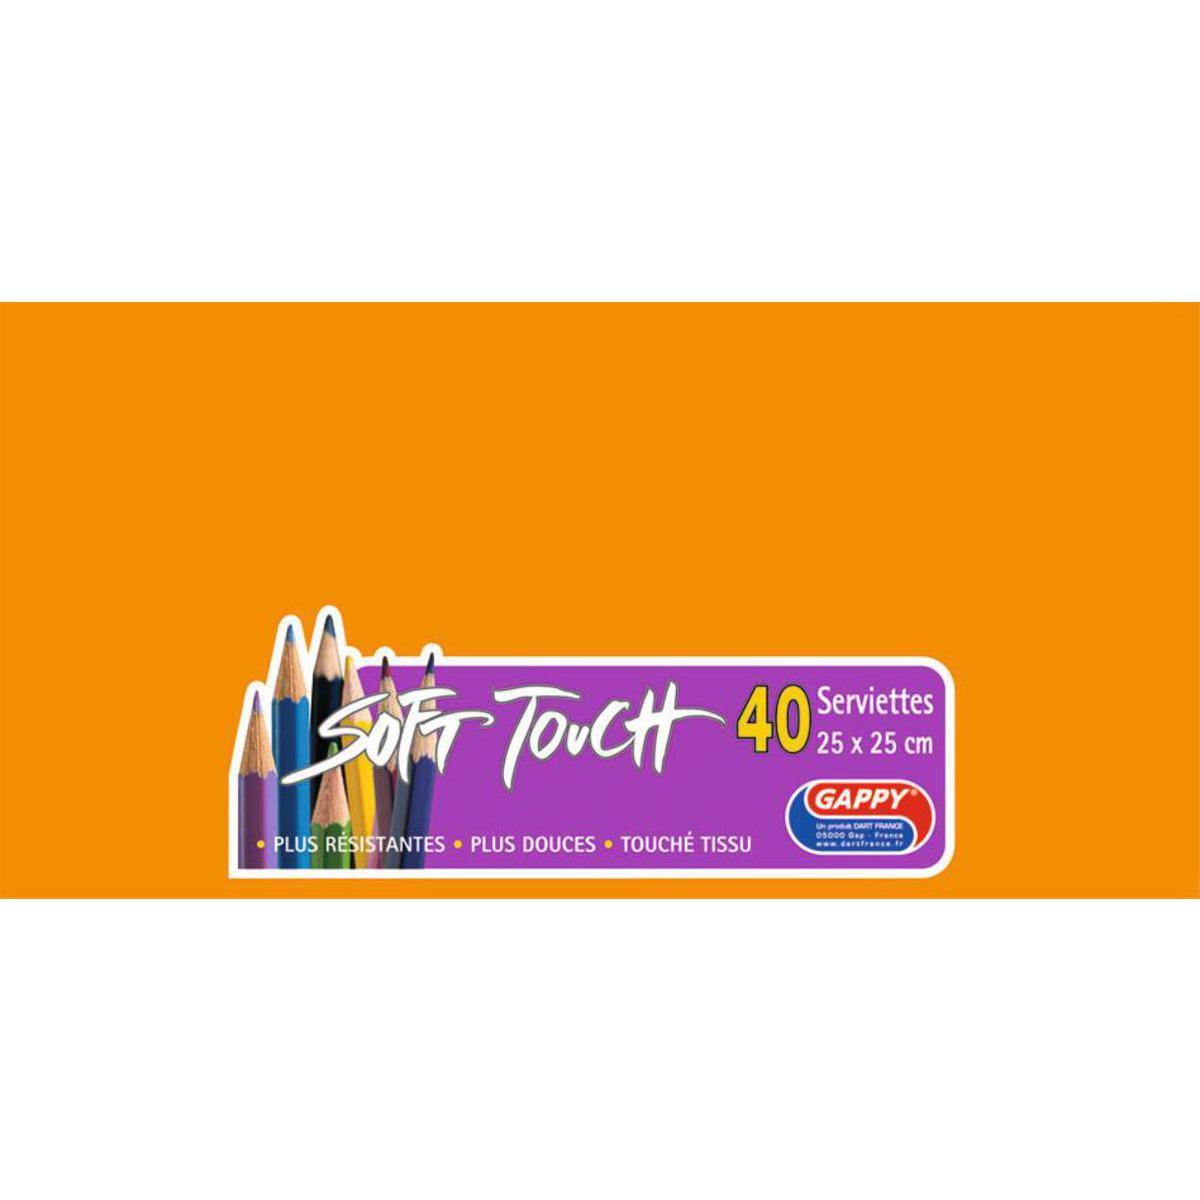 Lot de 40 serviettes Soft Touch Gappy - 25 x 25 cm - Pure Ouate de Cellulose - Orange